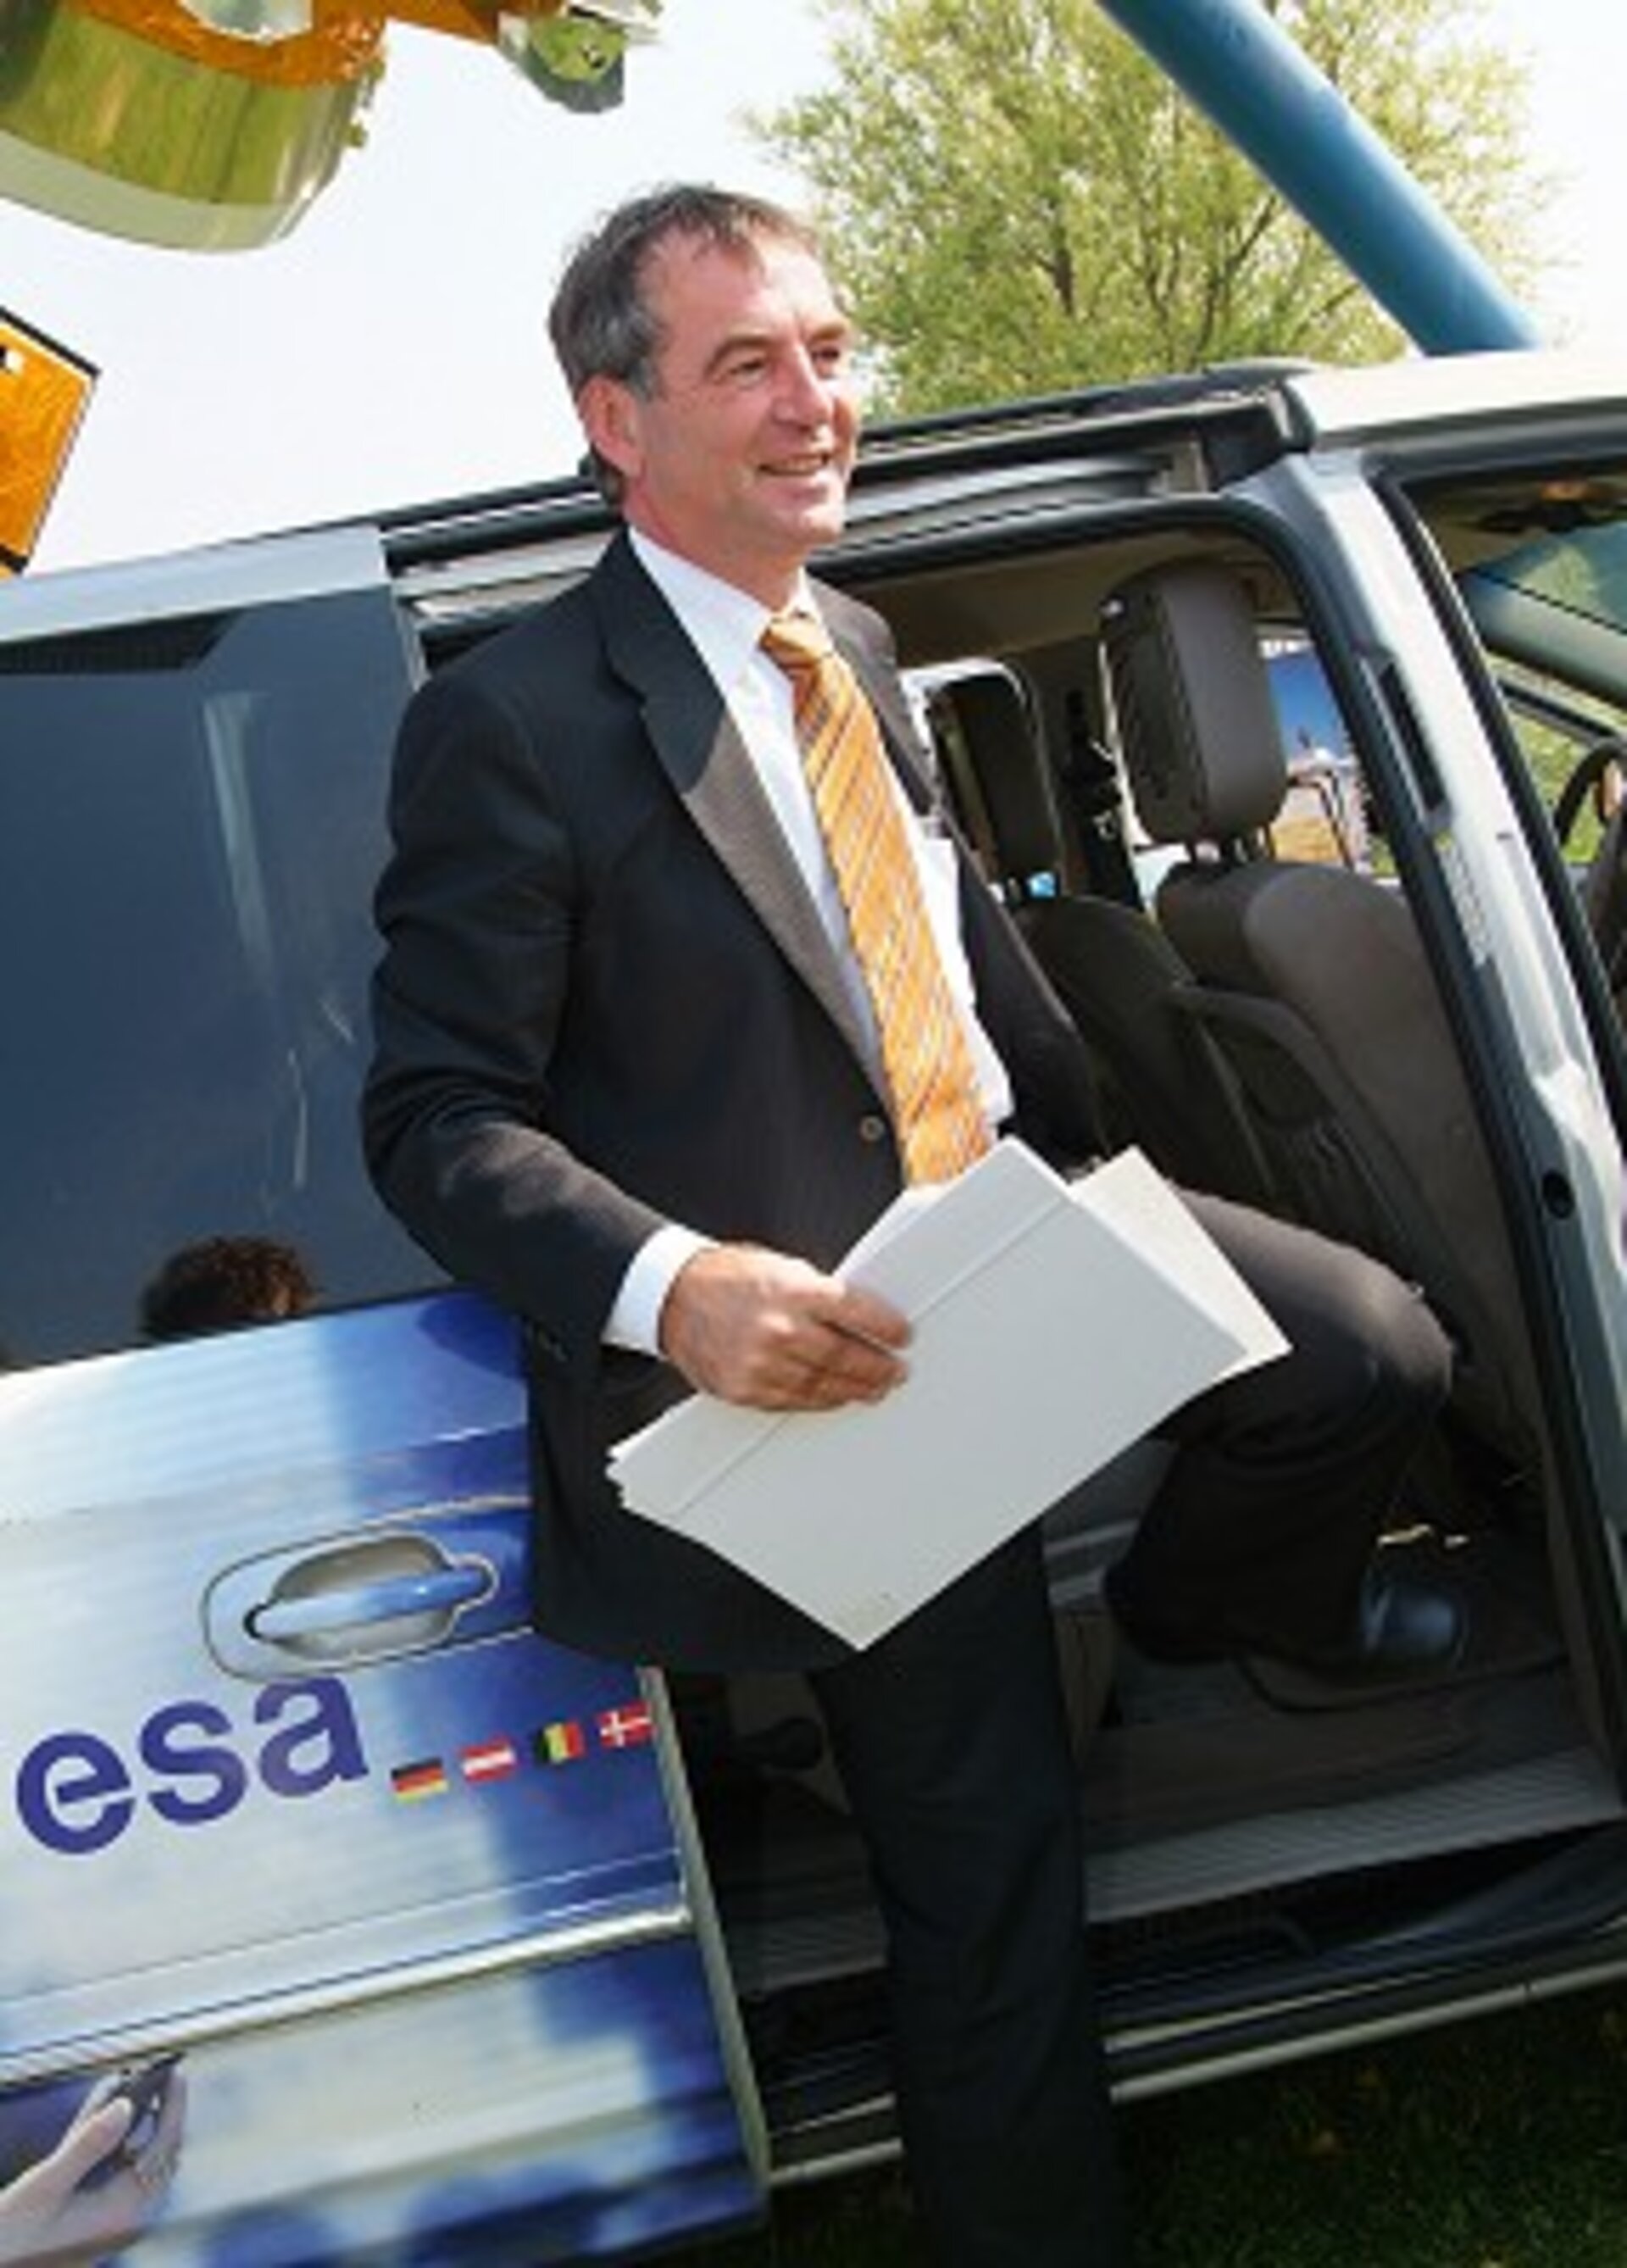 Van Geel stapt uit ESA's multimedia demonstratieauto